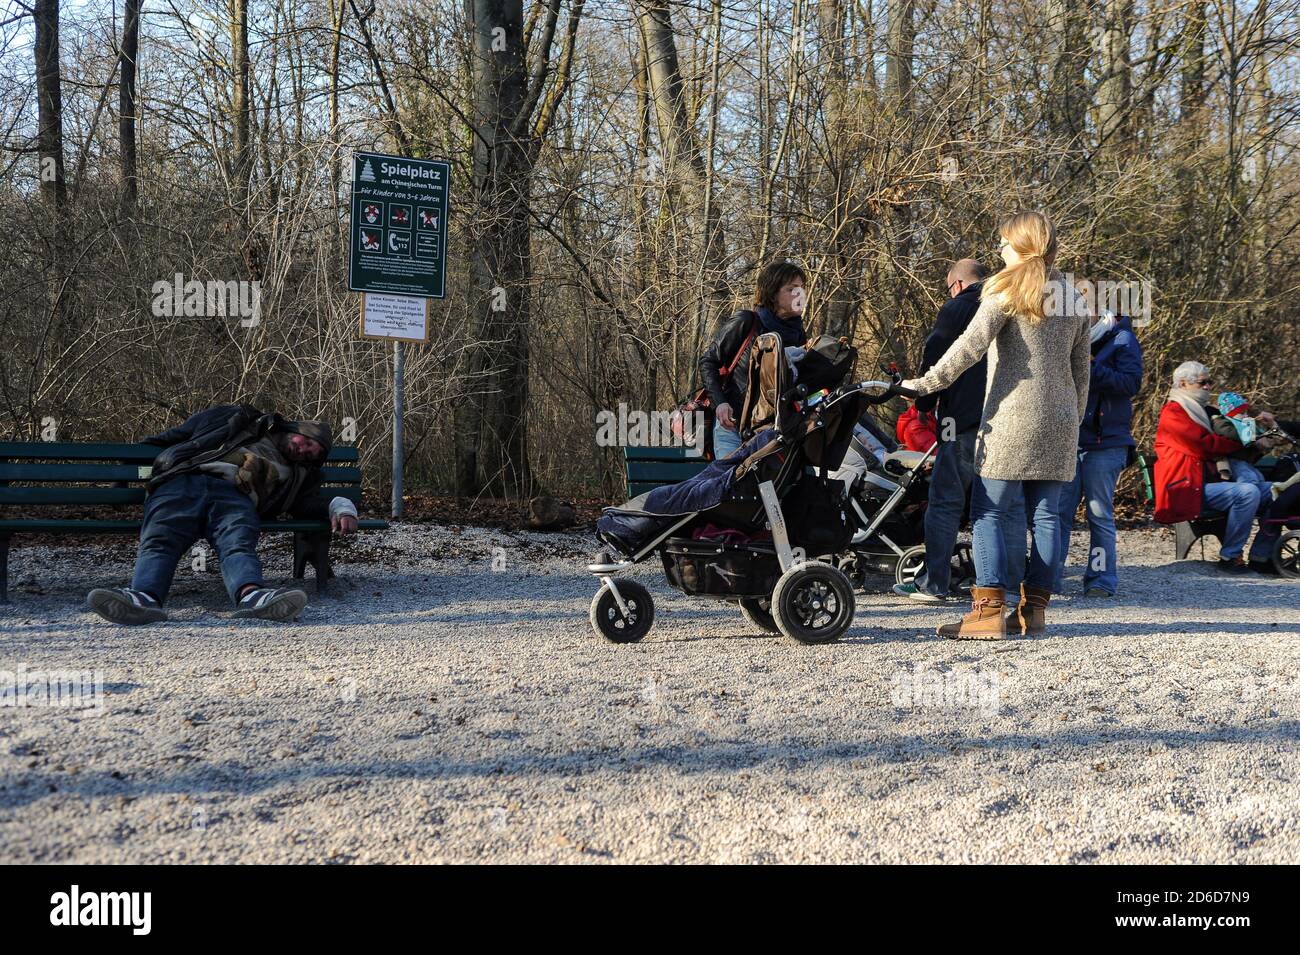 20.03.2015, Munich, Bavière, Allemagne - parents et leurs enfants visitent une aire de jeux publique à la Tour chinoise dans le jardin anglais sur un spri ensoleillé Banque D'Images